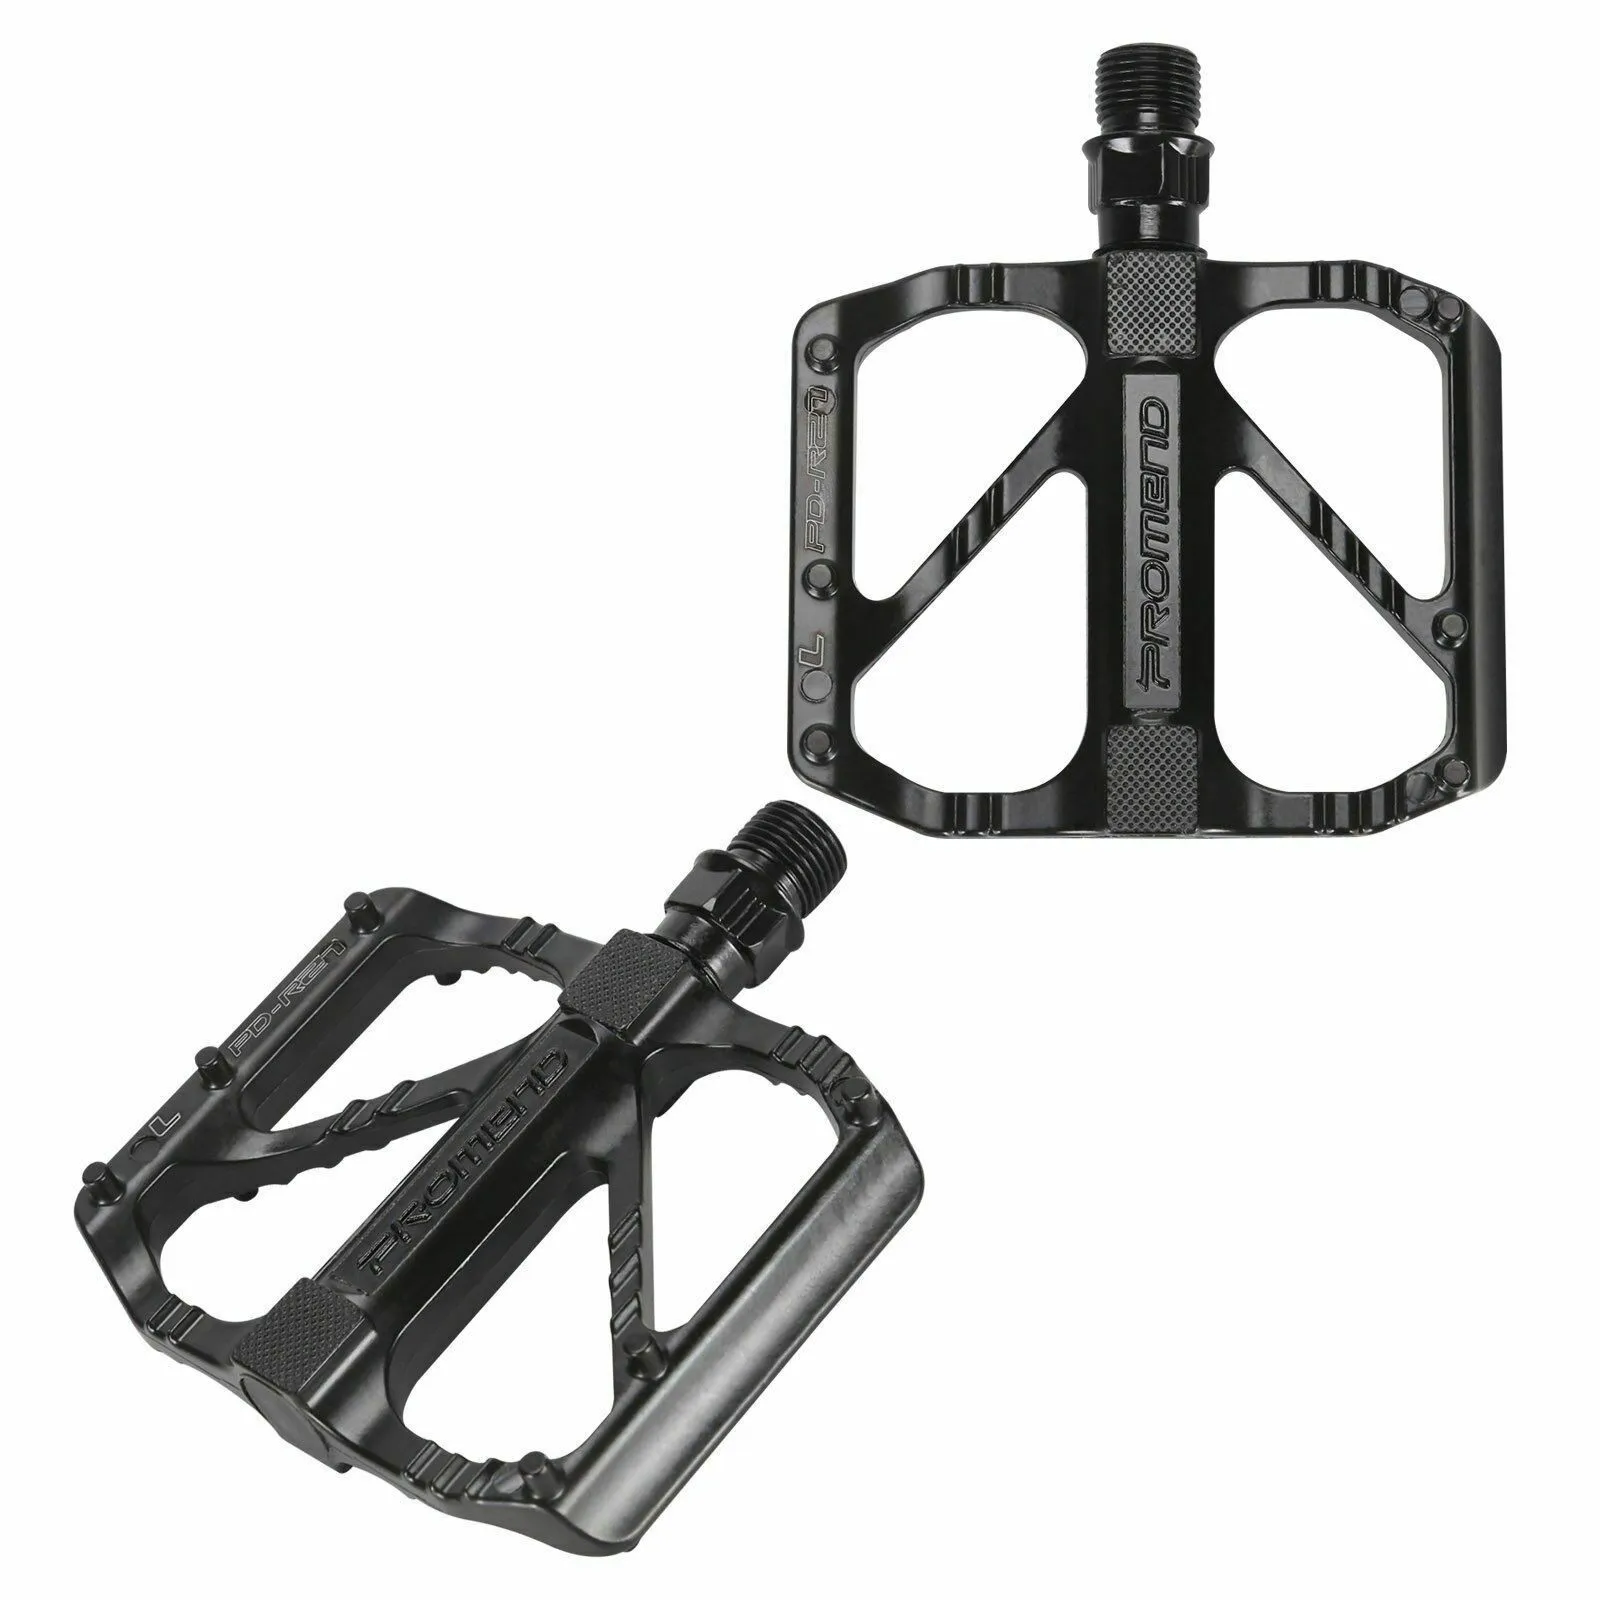 

1 пара велосипедных педалей PROMEND, черные противоскользящие алюминиевые педали из нержавеющей стали для горных и дорожных велосипедов с соединительными деталями 9/16 дюйма